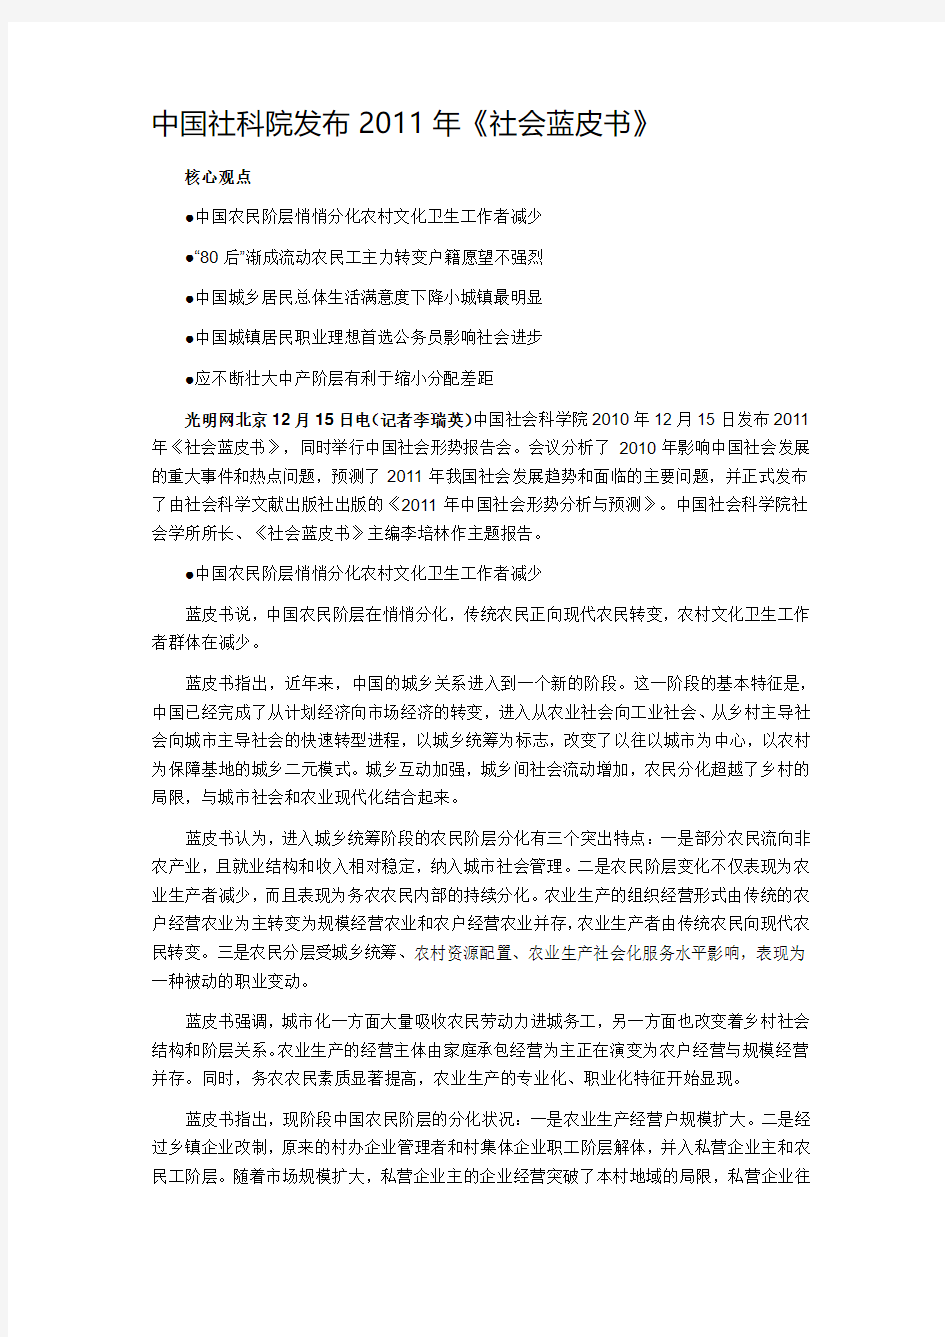 中国社科院发布2011年《社会蓝皮书》